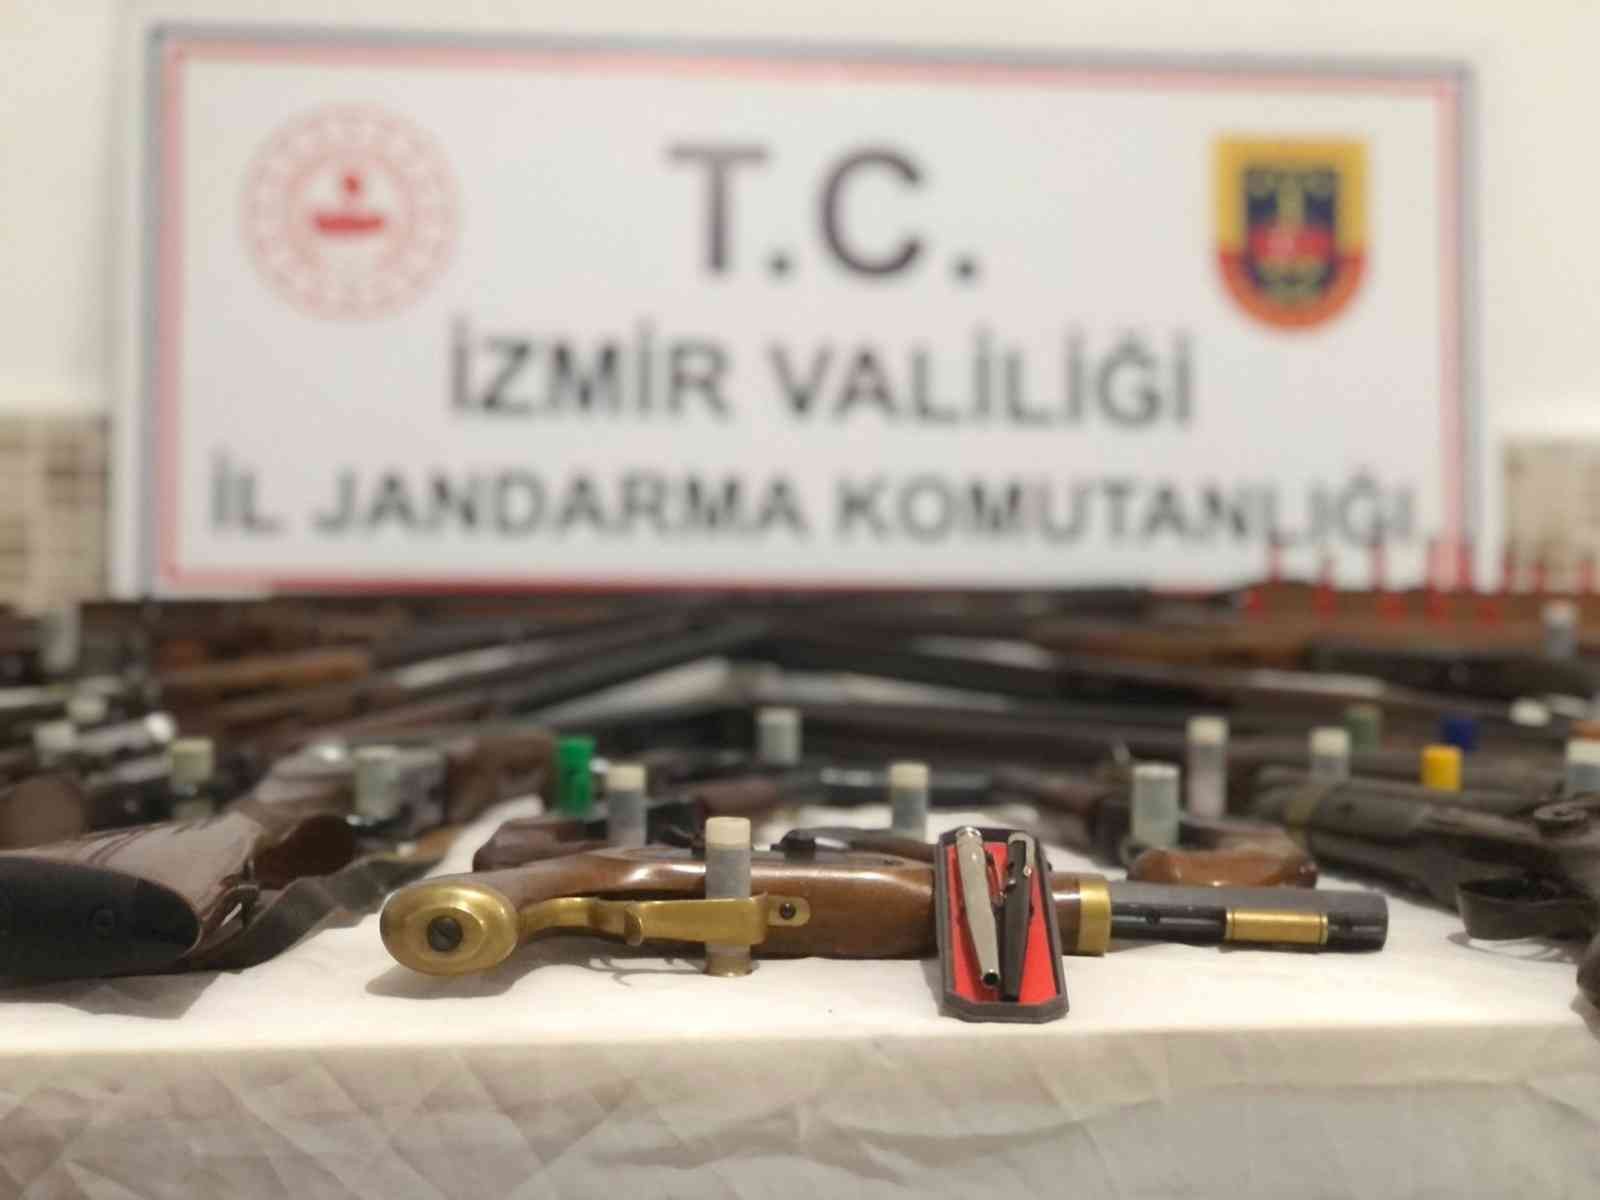 FETÖ şüphelisinin evinden casus tabancası çıktı #izmir